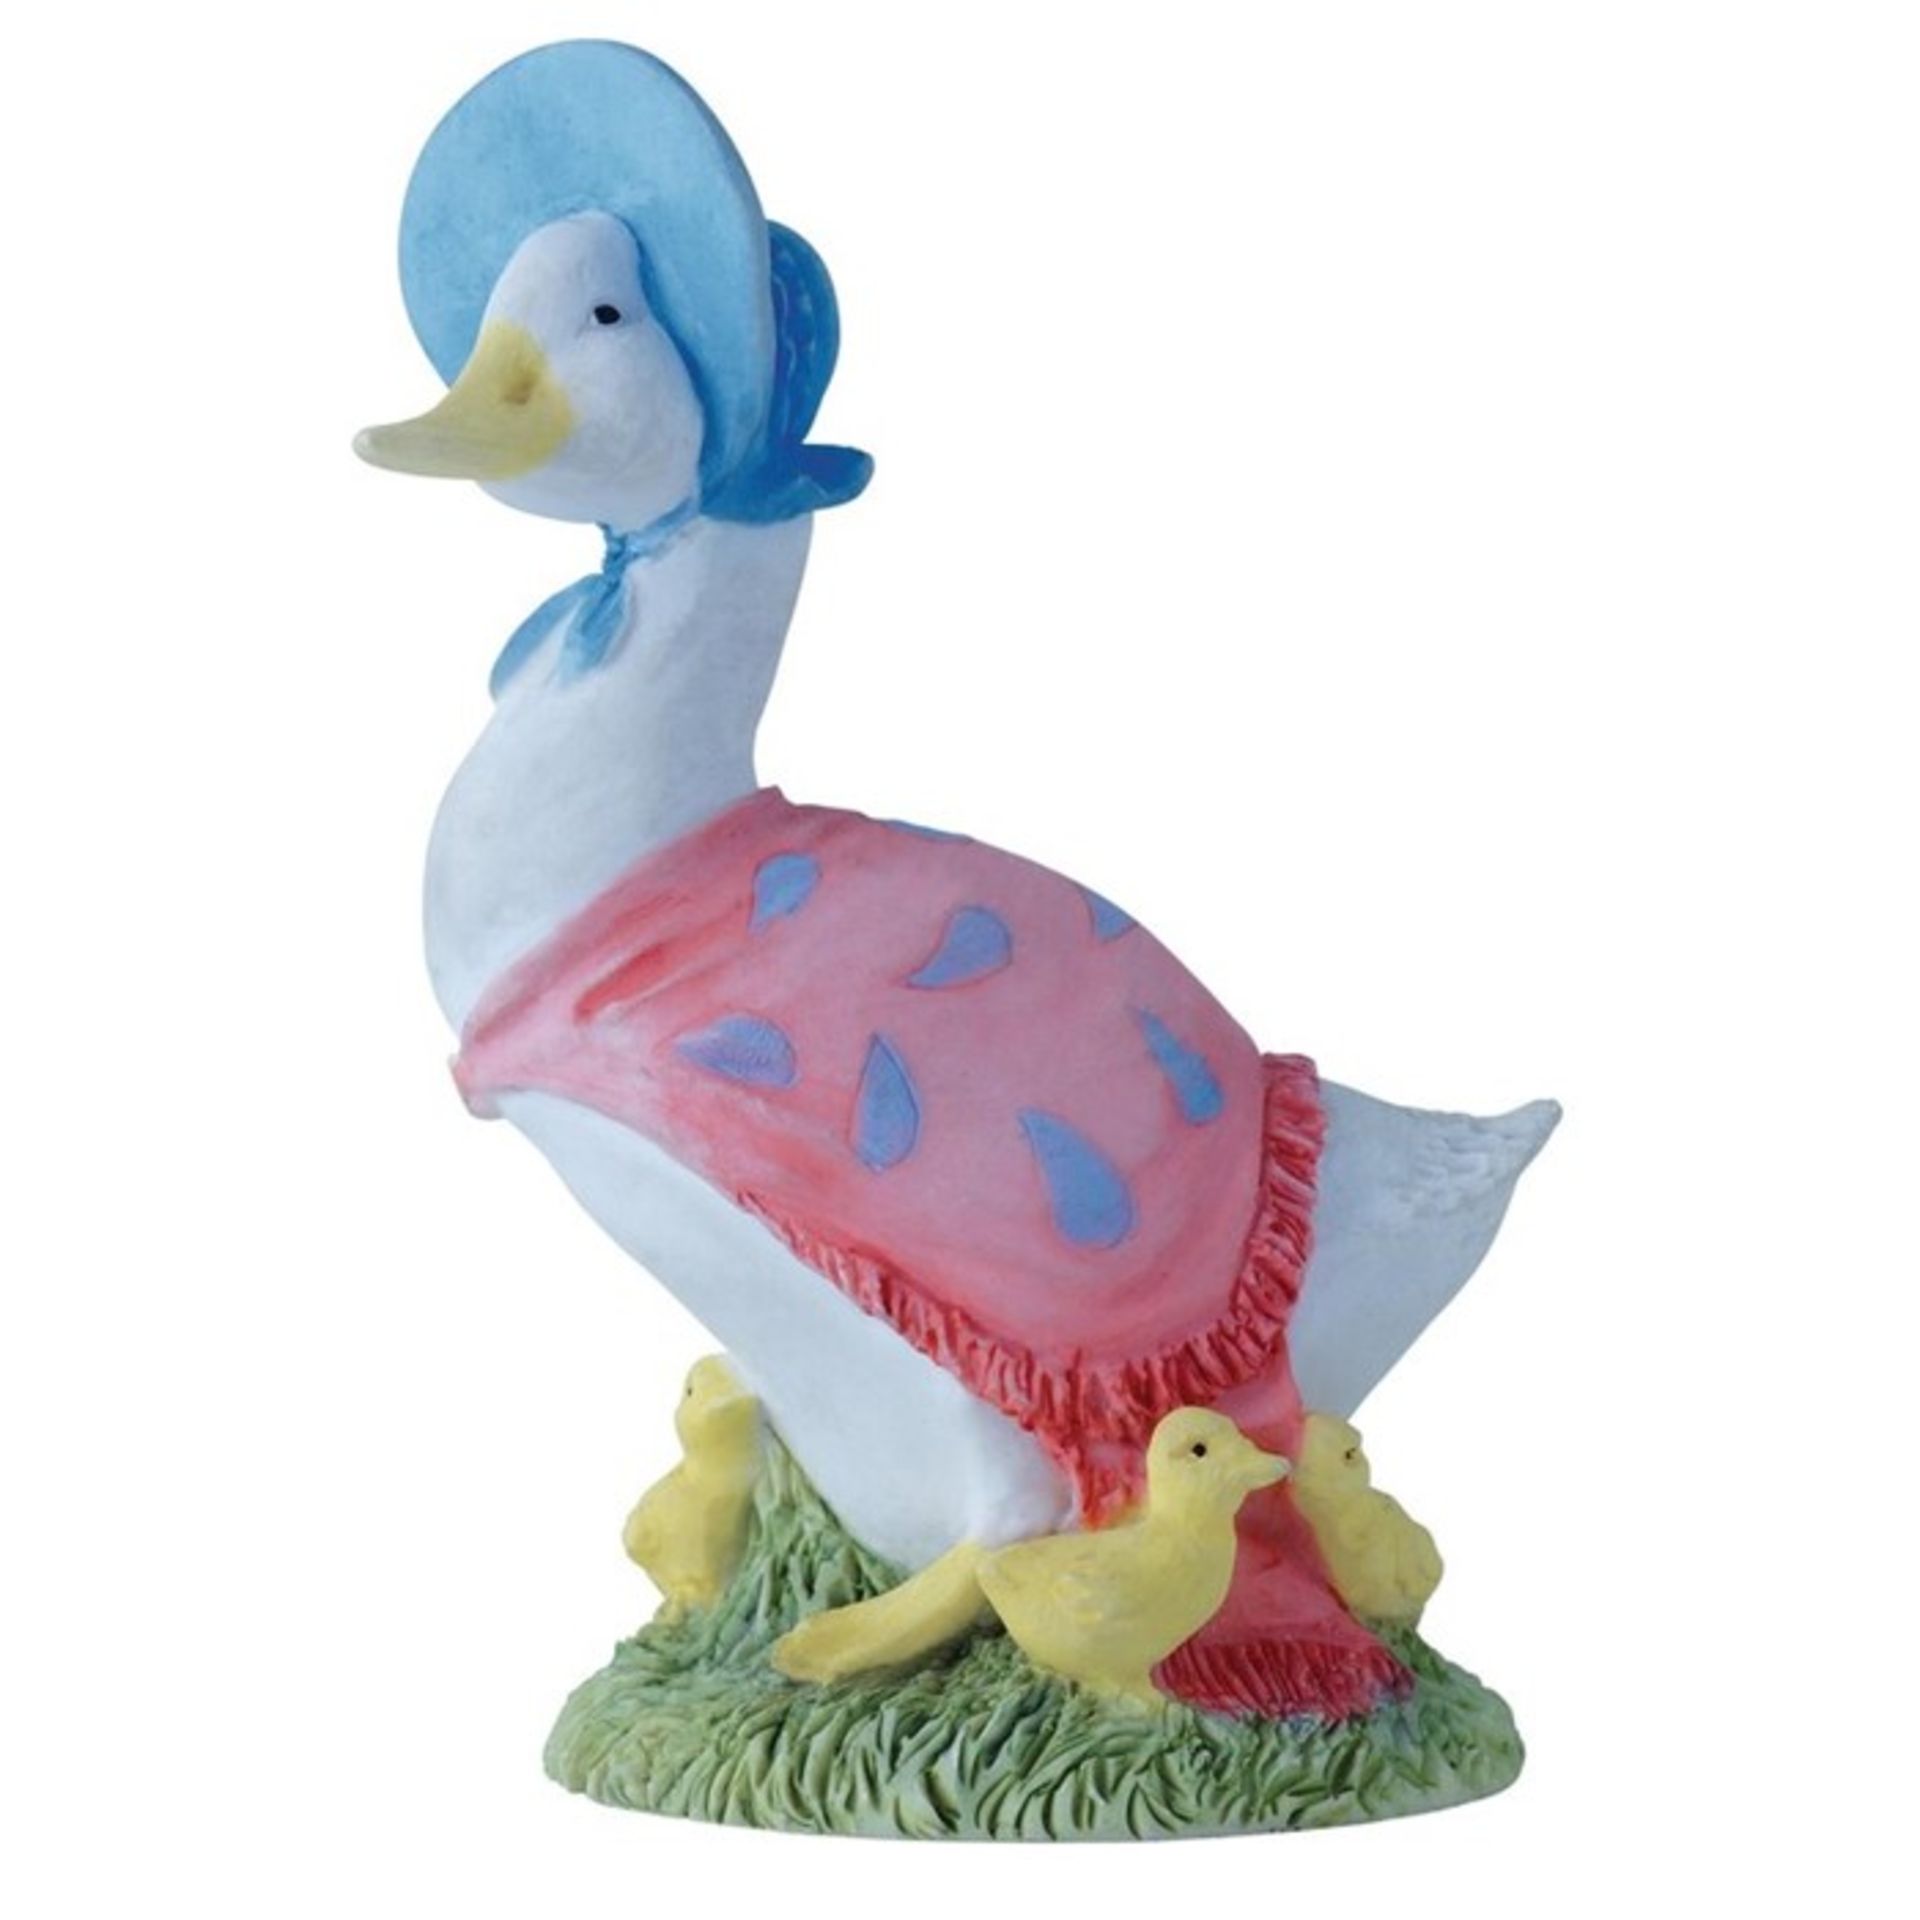 Beatrix Potter, Jemima Puddle Duck with Ducklings Figure - RRP £15.99 (BTPT1072 - 17491/23) 2E